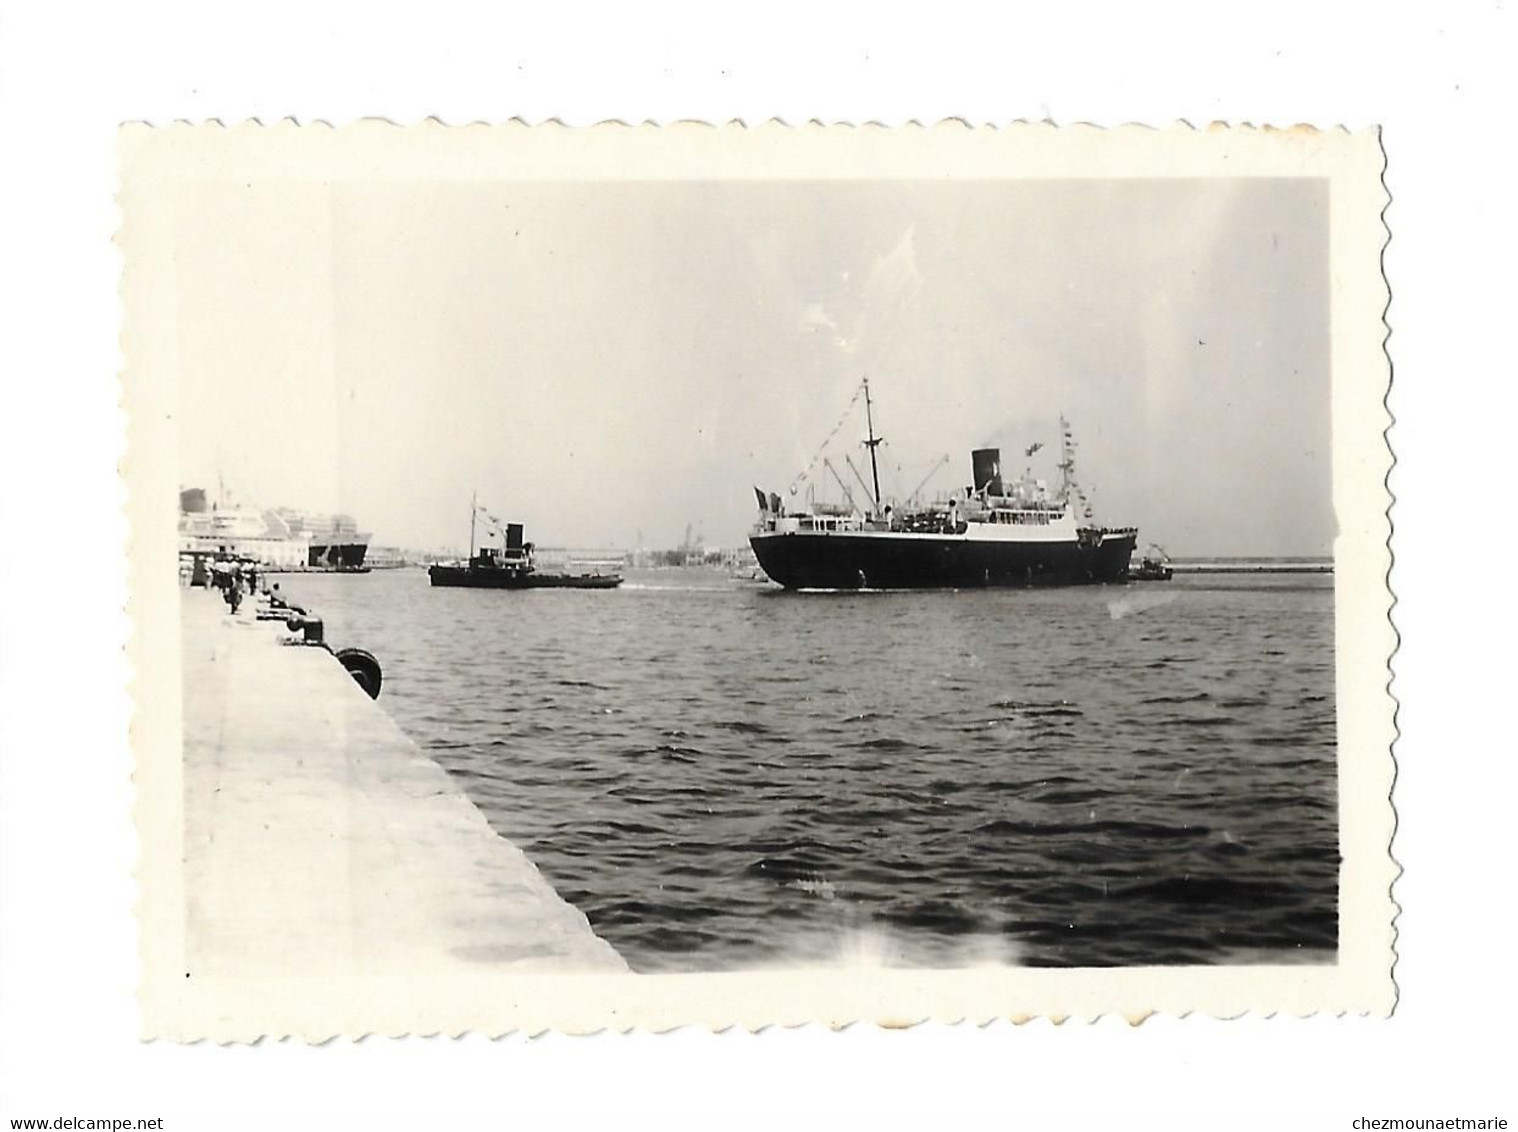 14 JUILLET 1957 ALGER - REMORQUEURS FAISANT TOURNER UN BATEAU - PHOTO - Schiffe